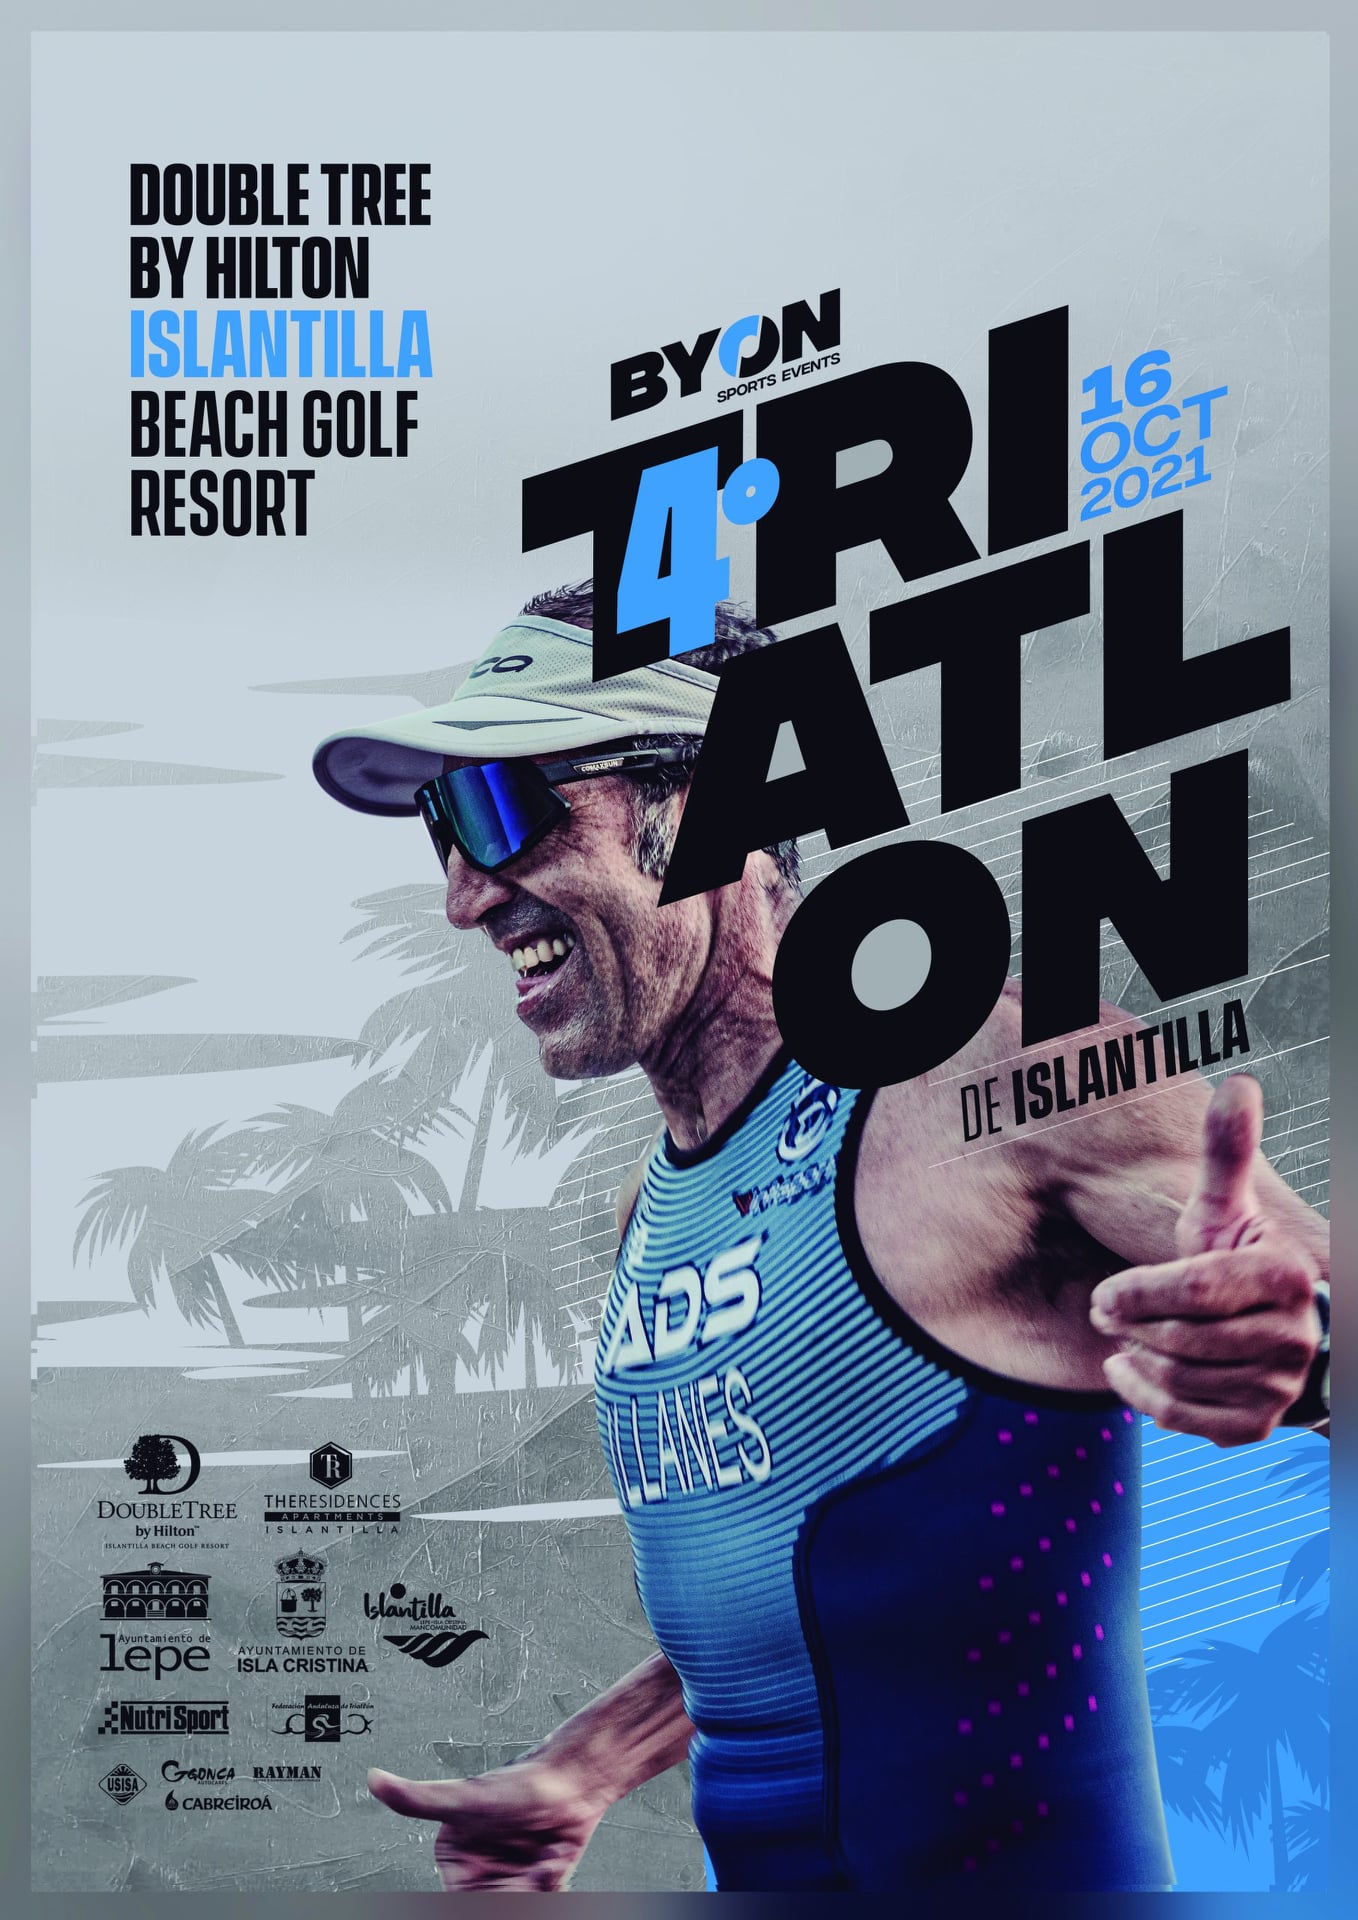 Todo a punto para la celebración del IV Triatlón DoubleTree by Hilton Islantilla Beach Golf Resort